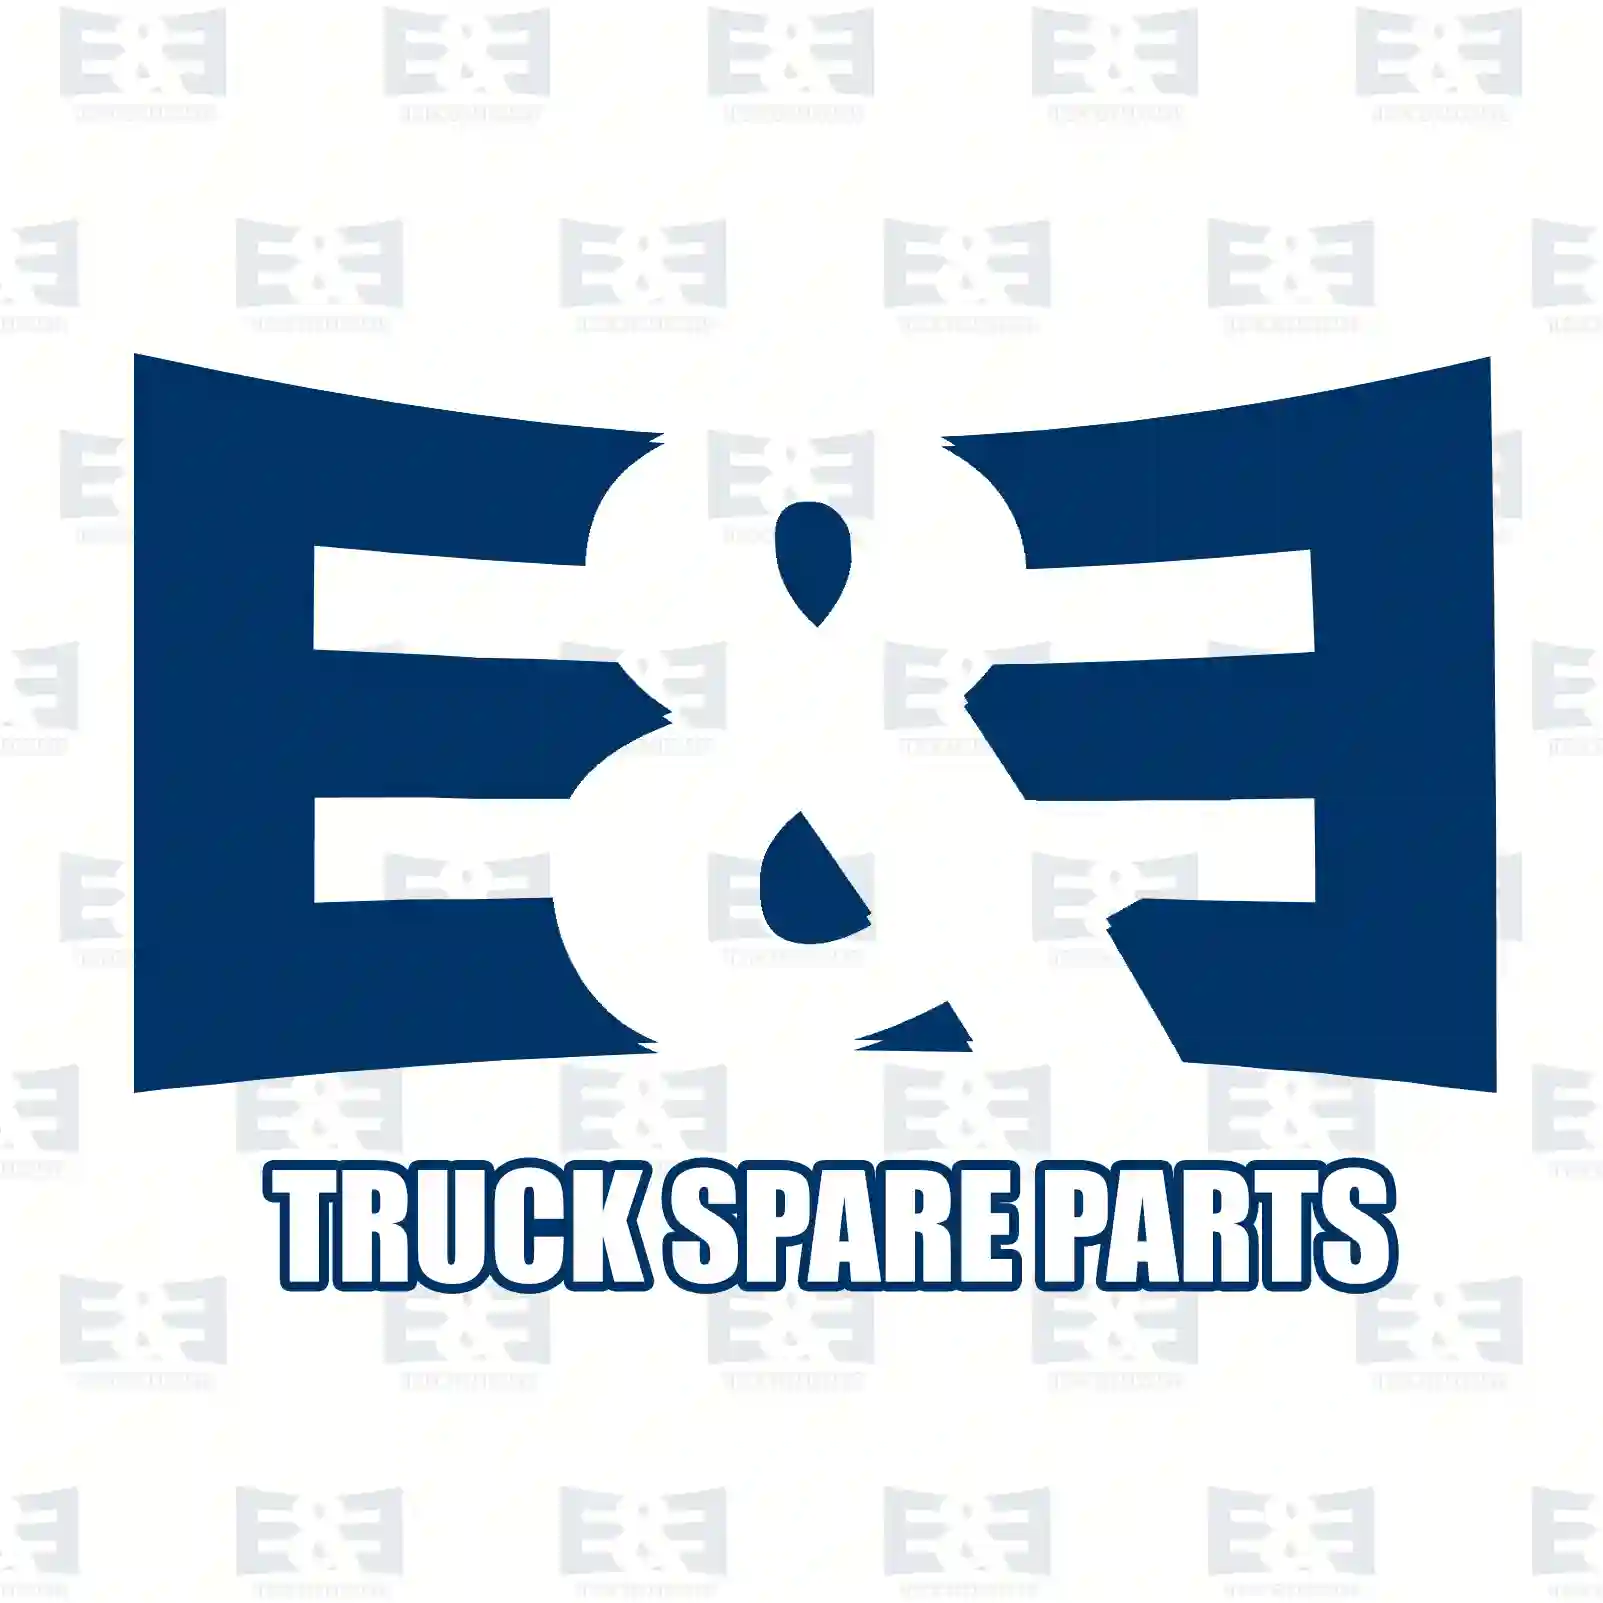 Belt tensioner, 2E2203746, 1096484, 1099922, 1116379, 1119954, 1333203, 1755162, YC1E-6A228-AF, YC1E-6A228-AG, YC1E-6A228-AH ||  2E2203746 E&E Truck Spare Parts | Truck Spare Parts, Auotomotive Spare Parts Belt tensioner, 2E2203746, 1096484, 1099922, 1116379, 1119954, 1333203, 1755162, YC1E-6A228-AF, YC1E-6A228-AG, YC1E-6A228-AH ||  2E2203746 E&E Truck Spare Parts | Truck Spare Parts, Auotomotive Spare Parts